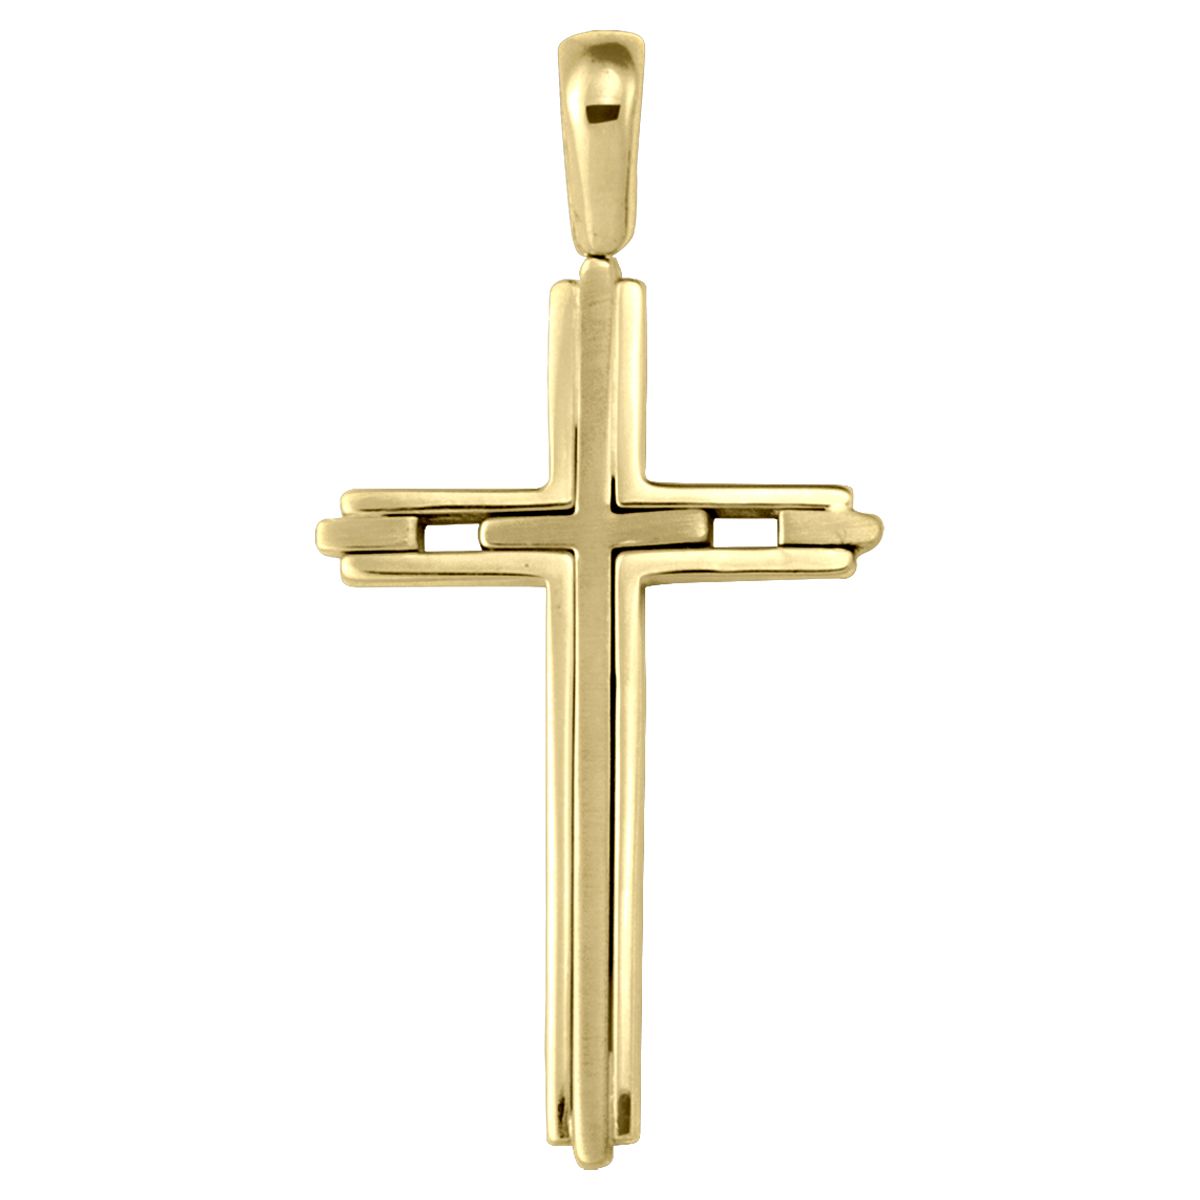 X0418, Gold Cross, Modern Design